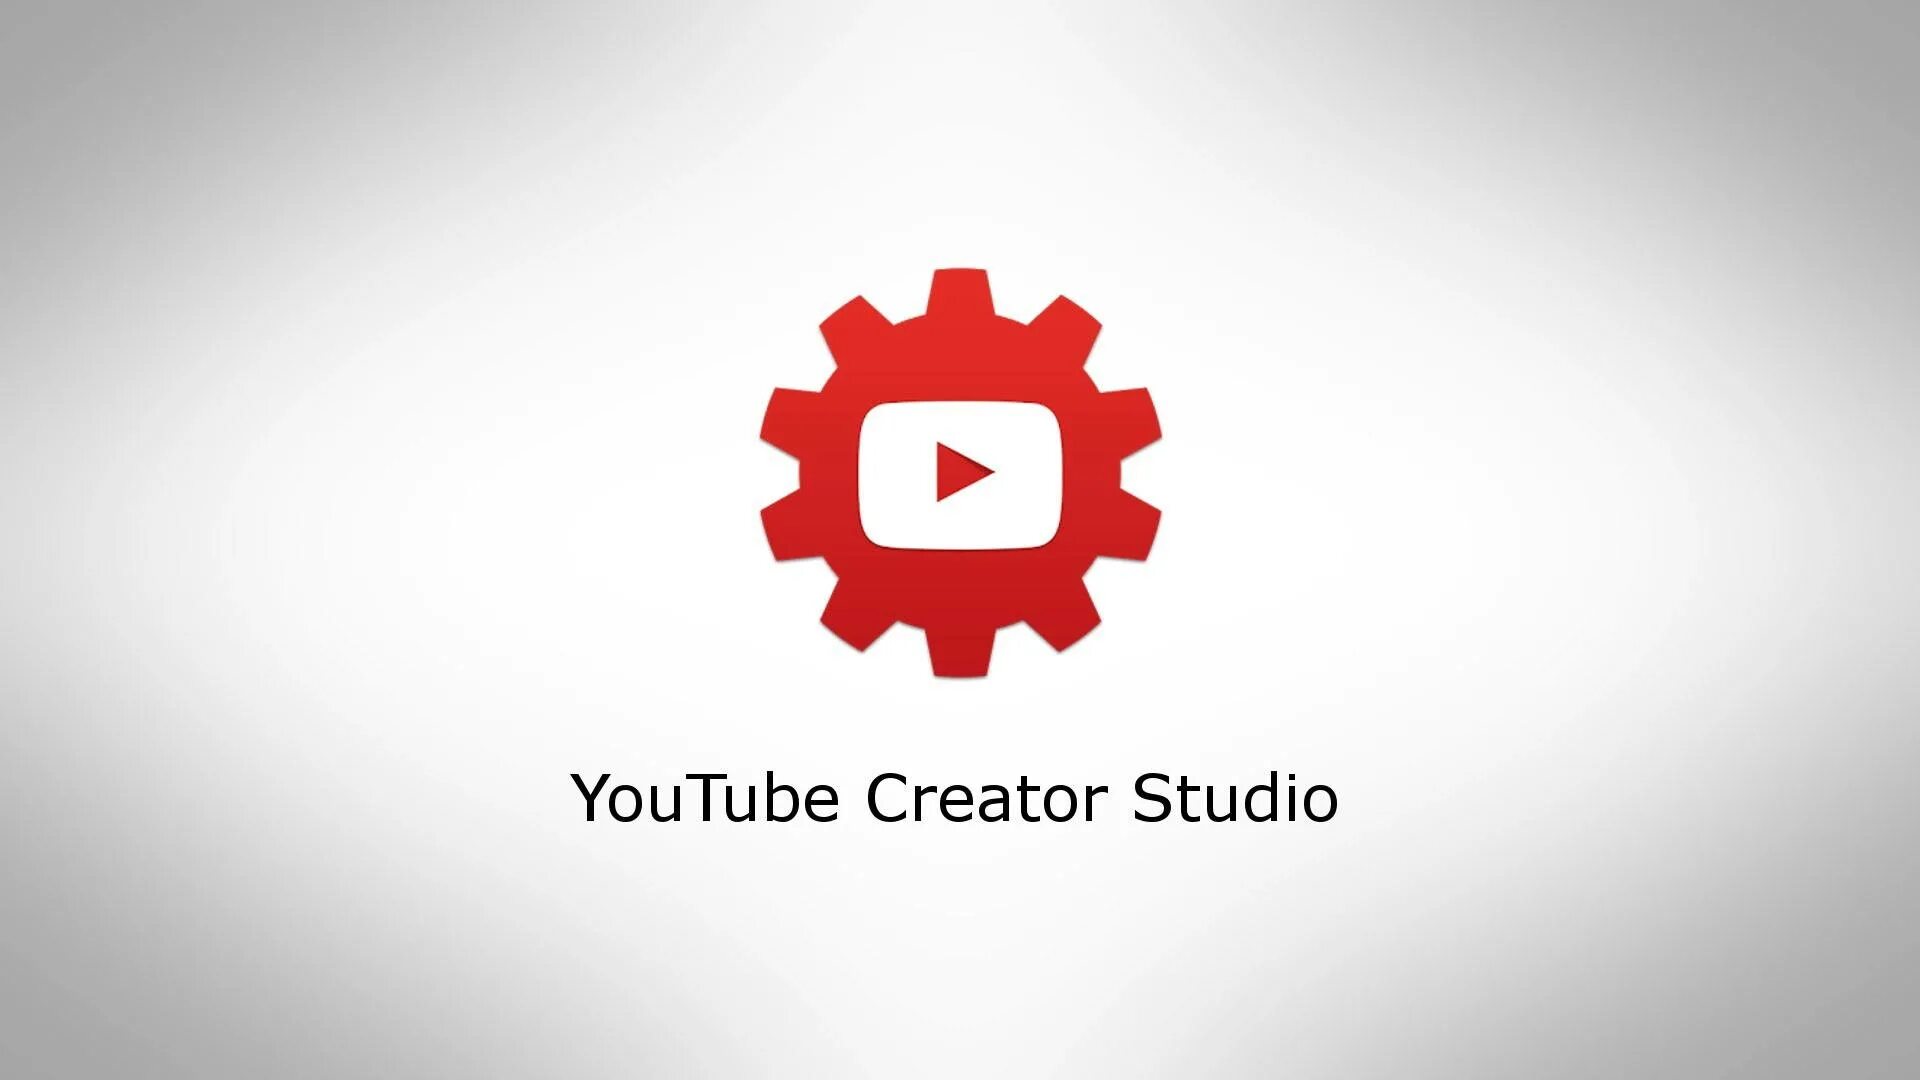 Youtube Studio. Ютуб студия. Youtube creator Studio. Творческая студия ютуб. Ютуб пк версия войти творческая студия